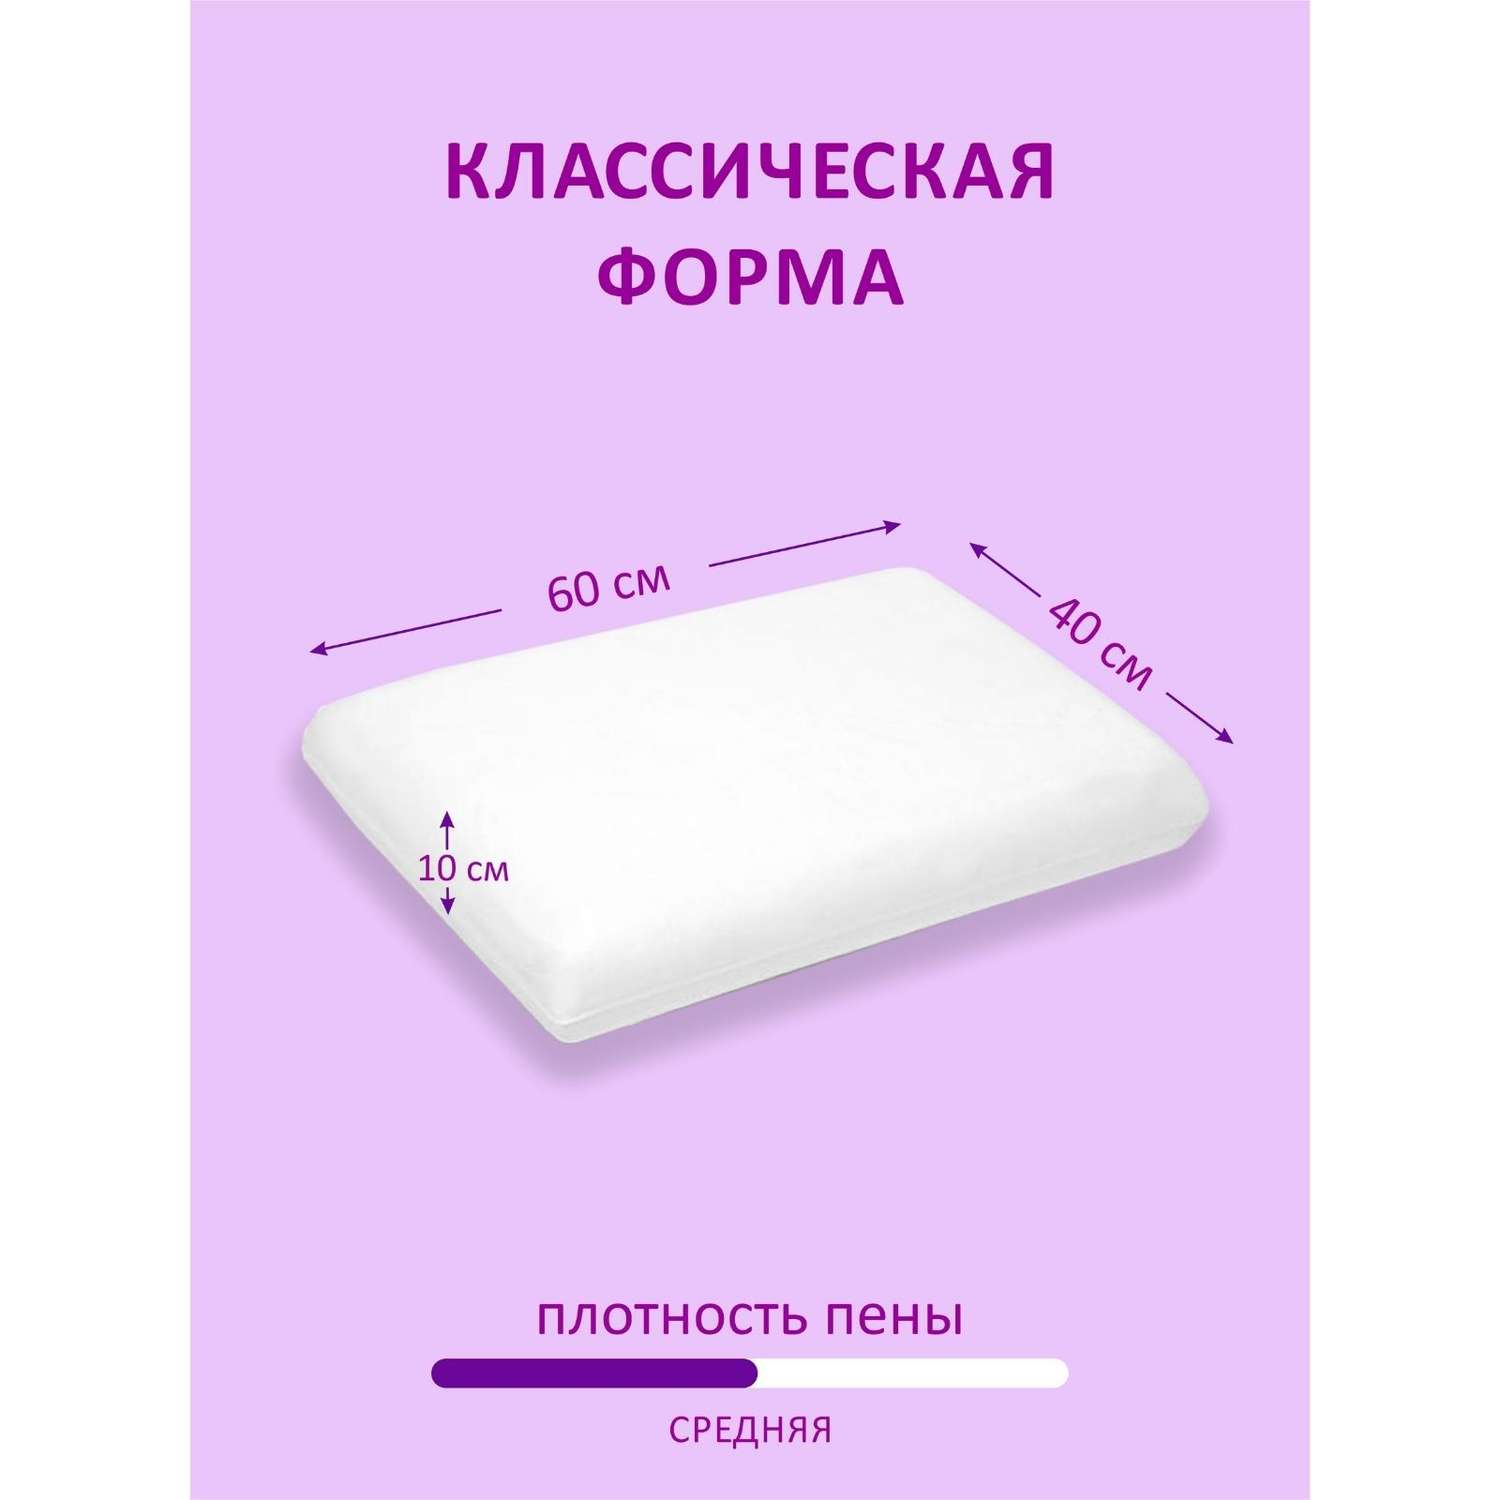 Анатомическая подушка для сна Green Leaf Formula с эффектом памяти 60х40 высота 10 - фото 3